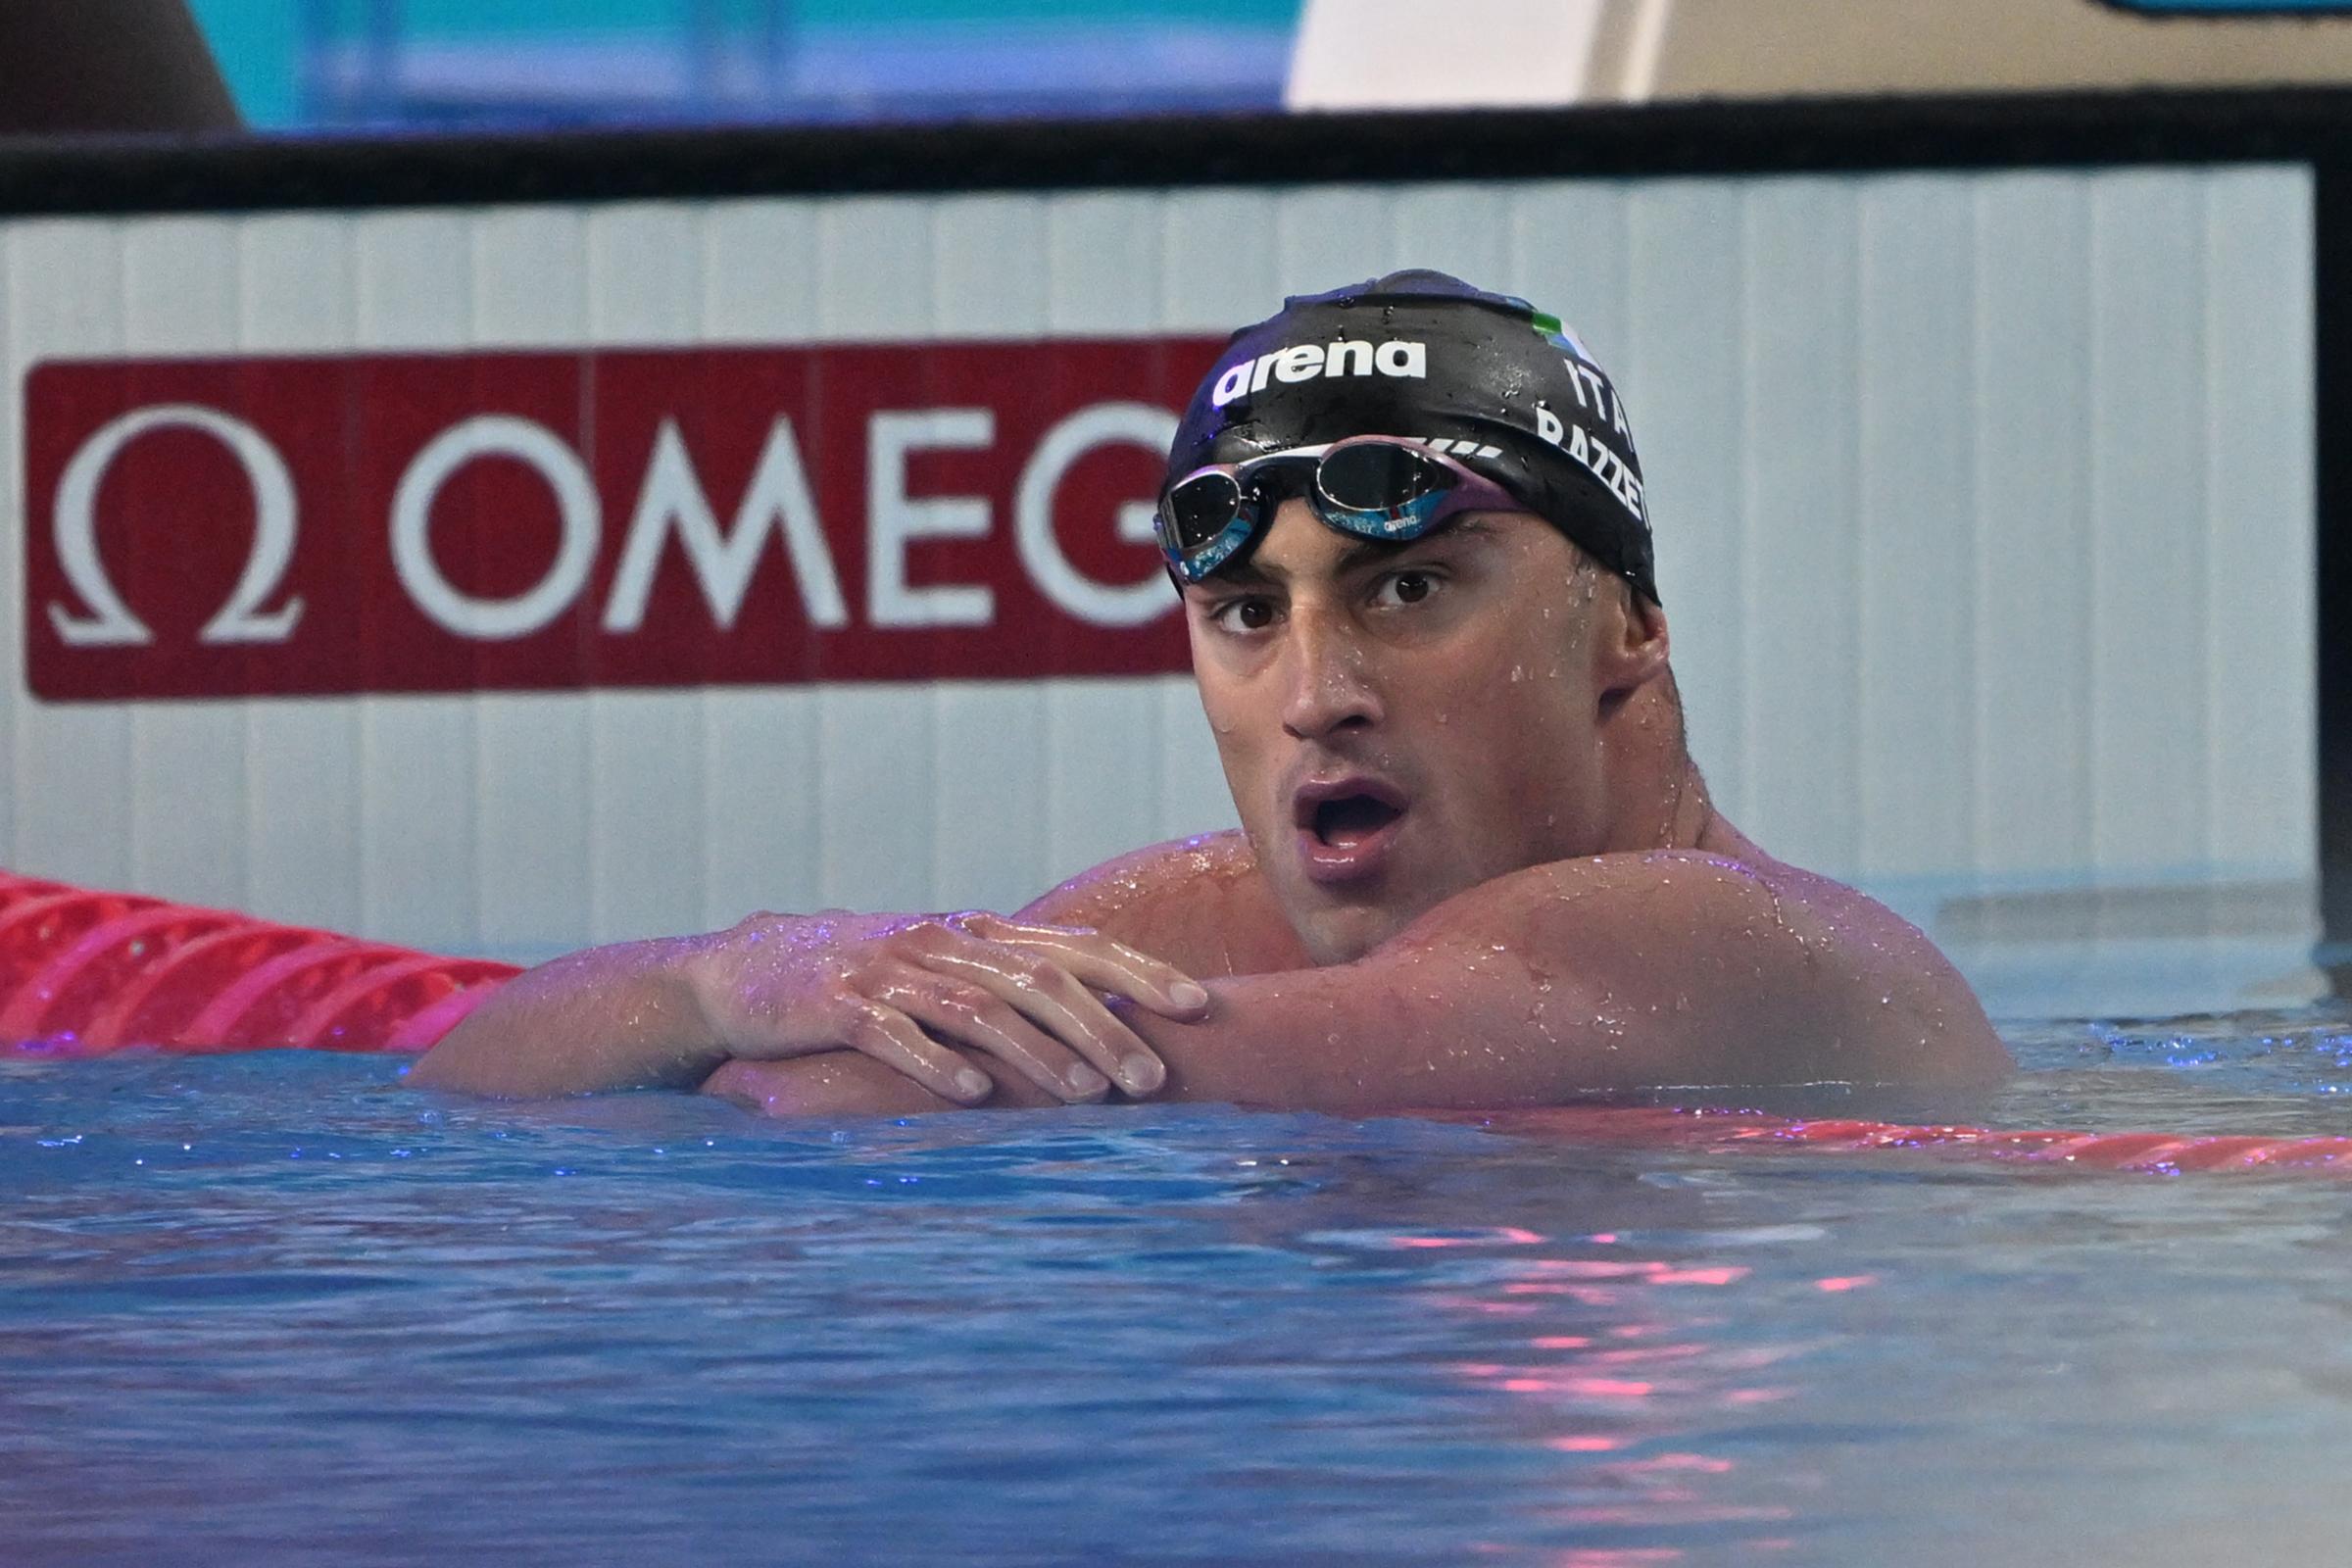 Nuoto, Alberto Razzetti bronzo ai Mondiali: “Medaglia non scontata, con il mio migliore si poteva vincere”